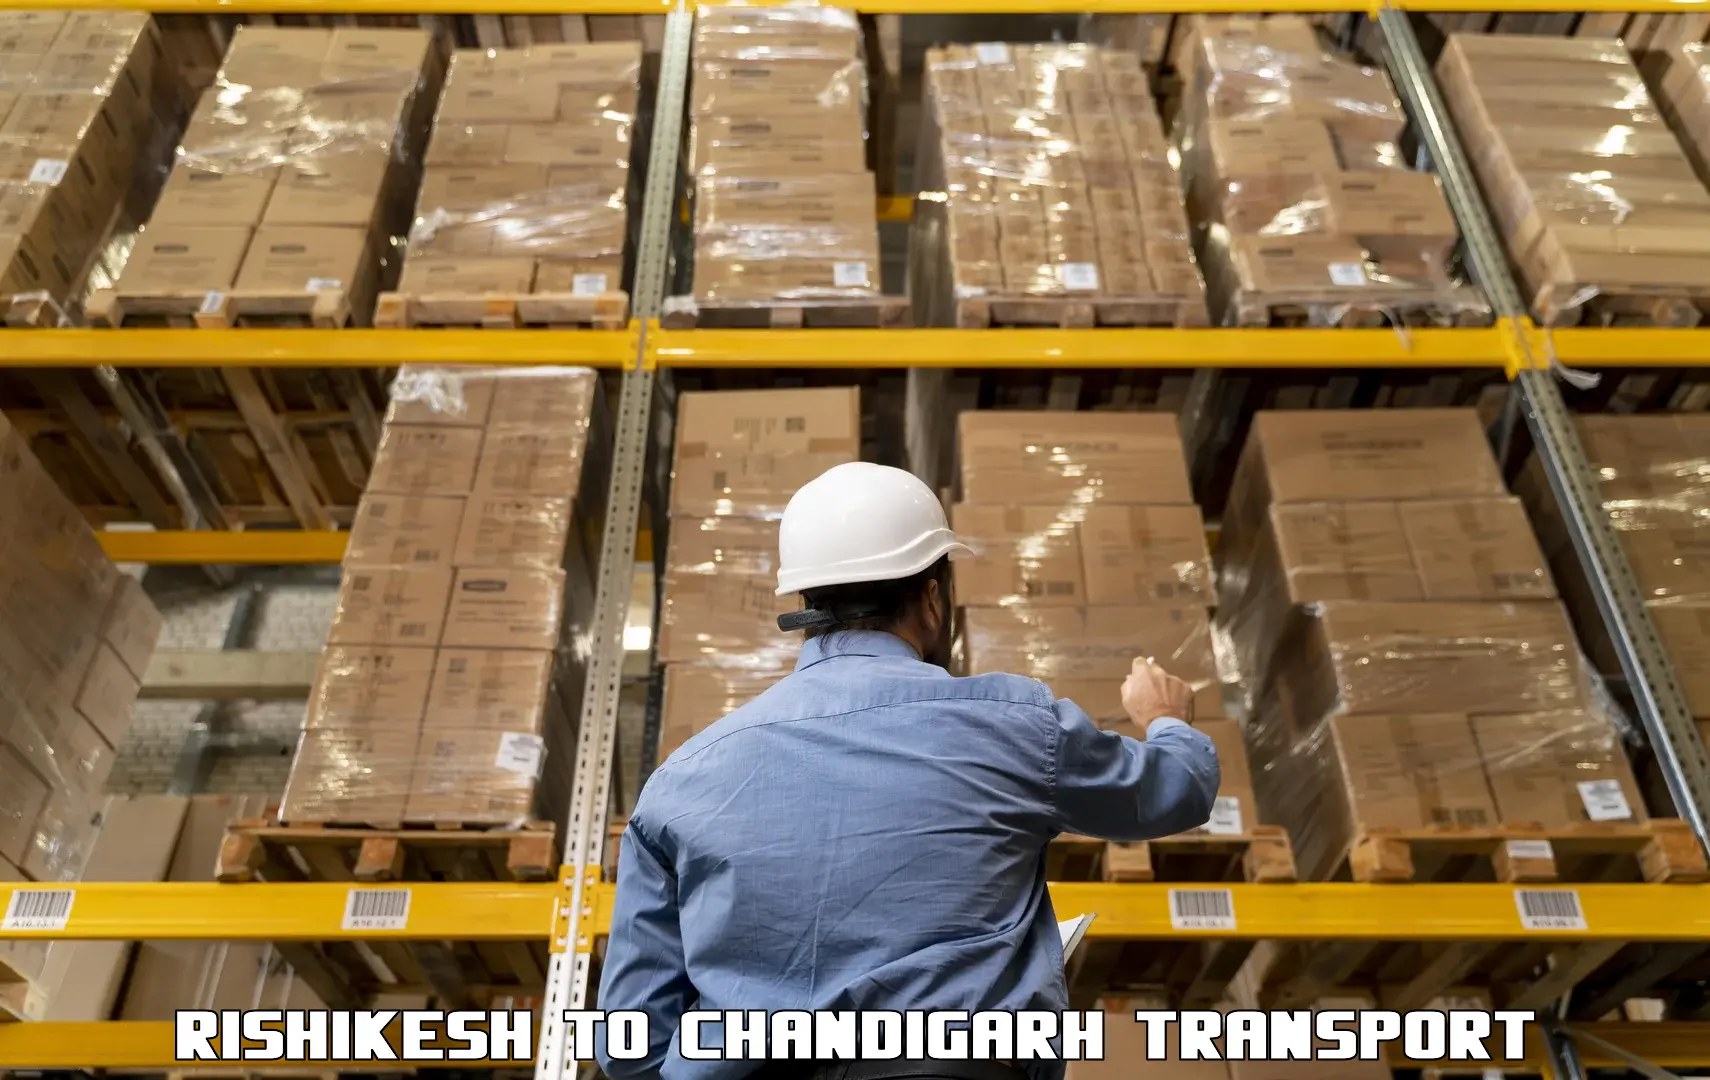 Shipping partner Rishikesh to Chandigarh